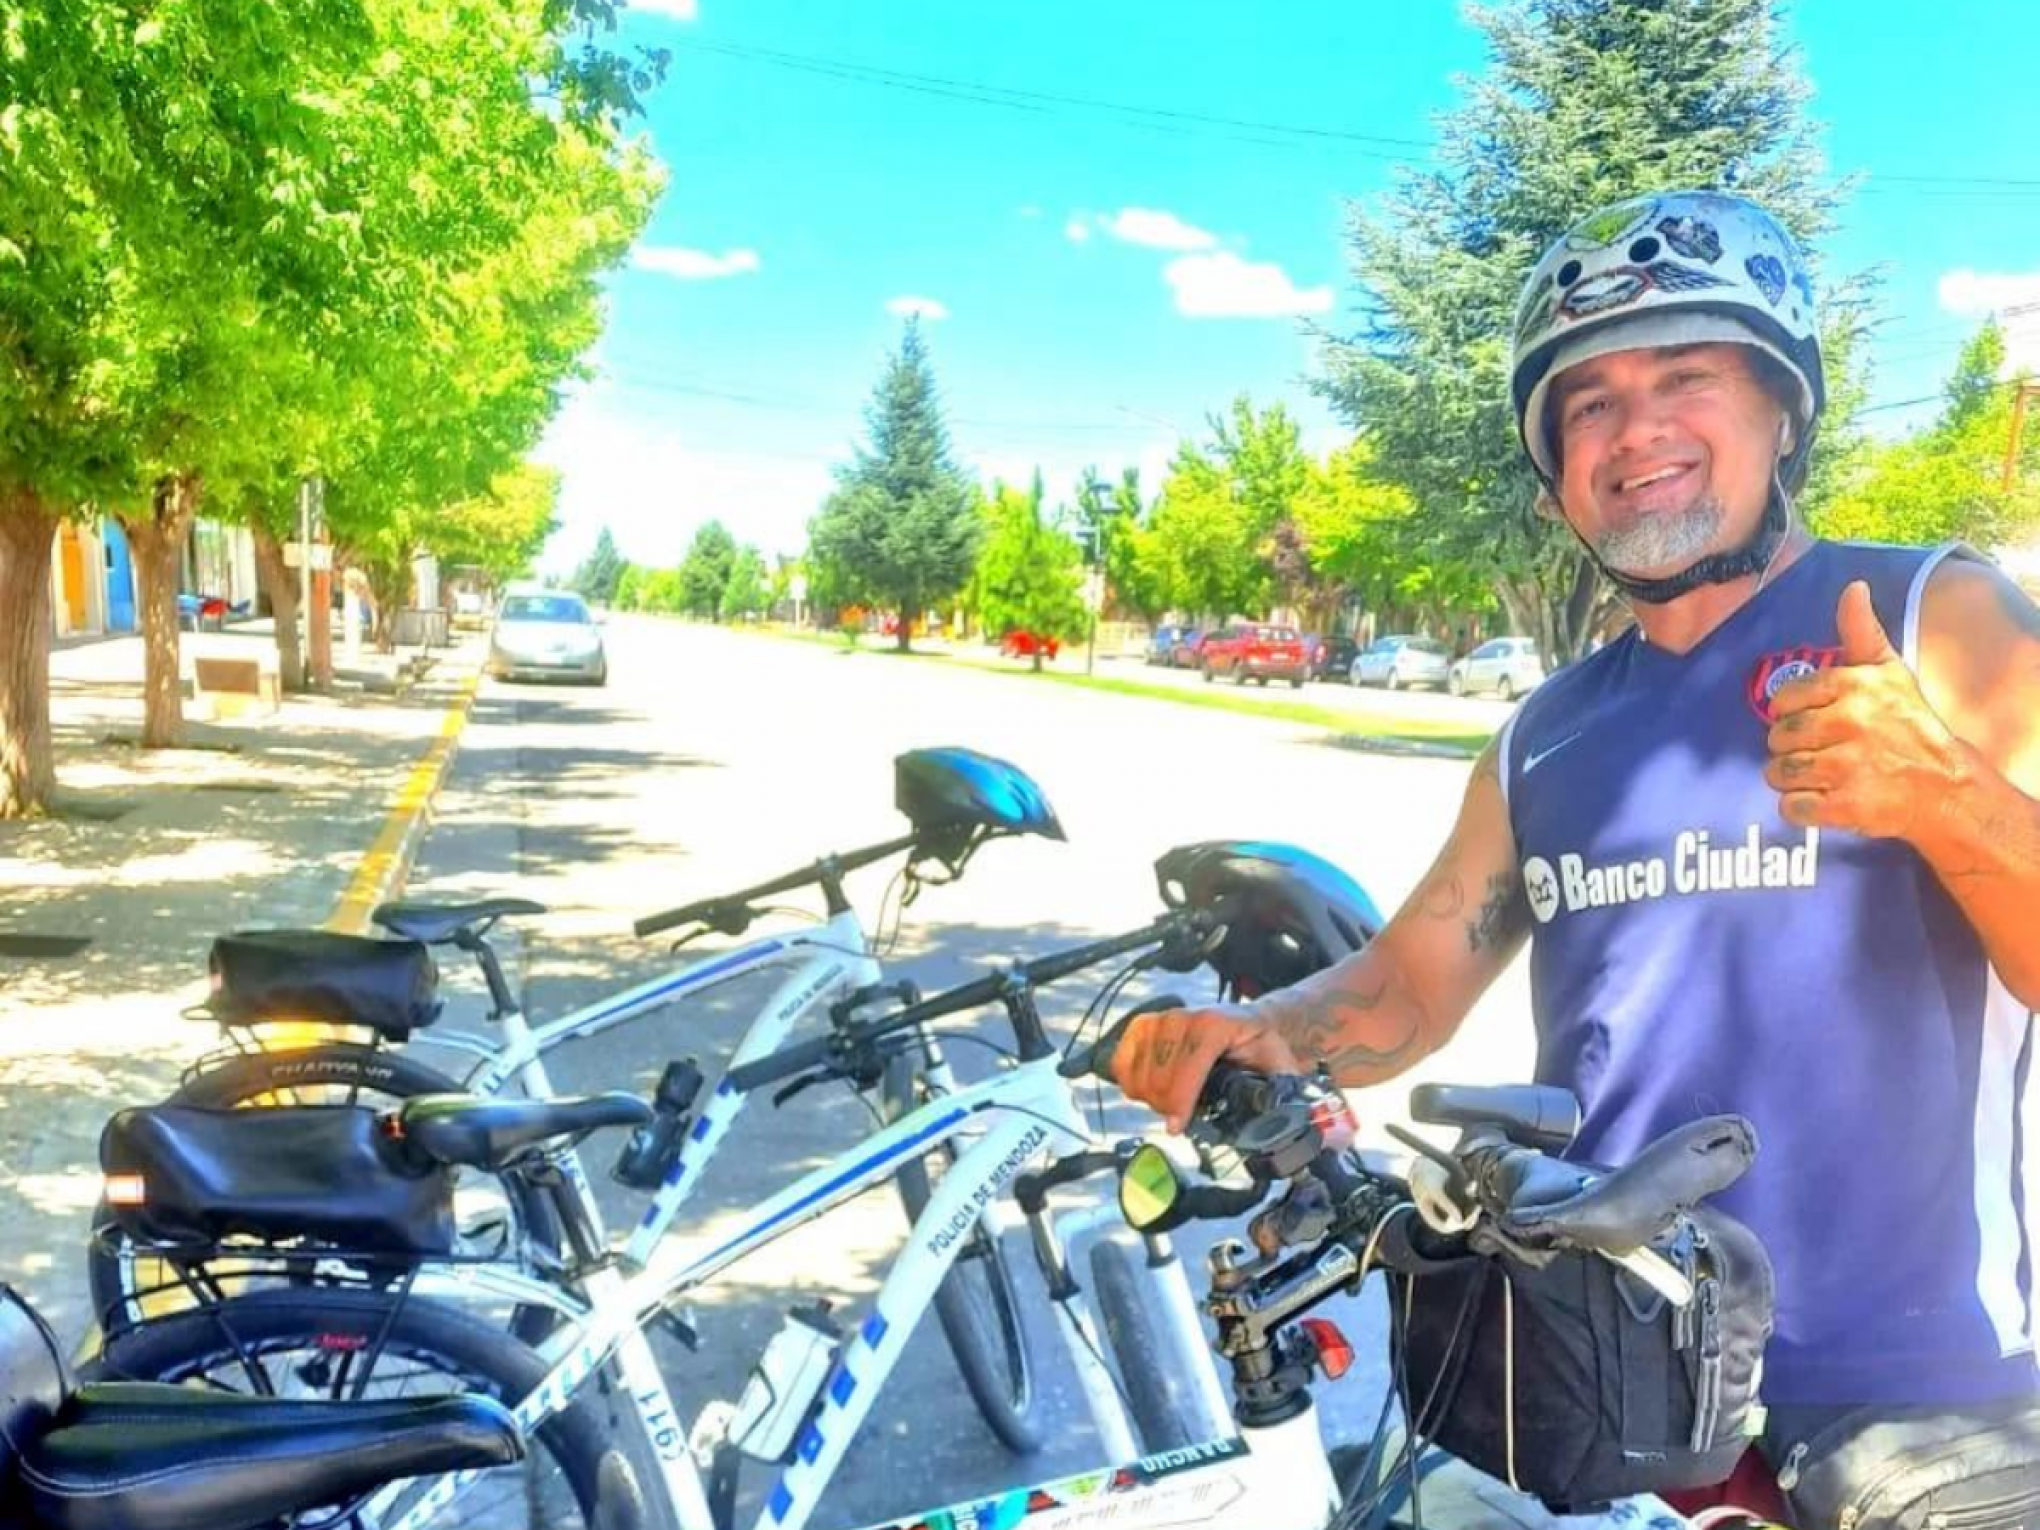 "Viver muito com quase nada": Conheça a história do morador de Novo Hamburgo que dá a volta por cima pedalando